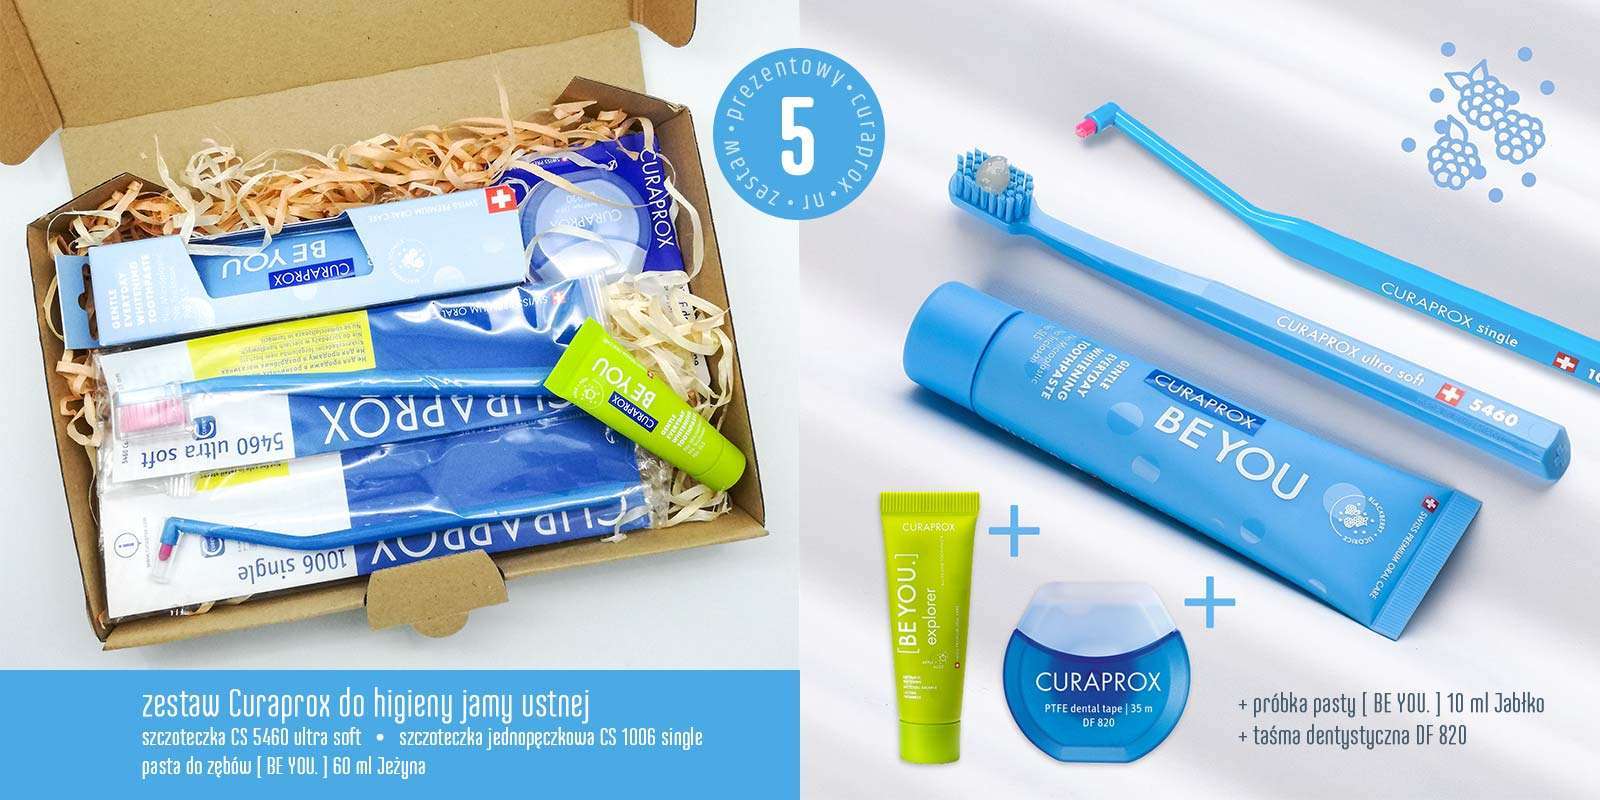 Zestaw prezentowy produktów do higieny jamy ustnej marki Curaprox